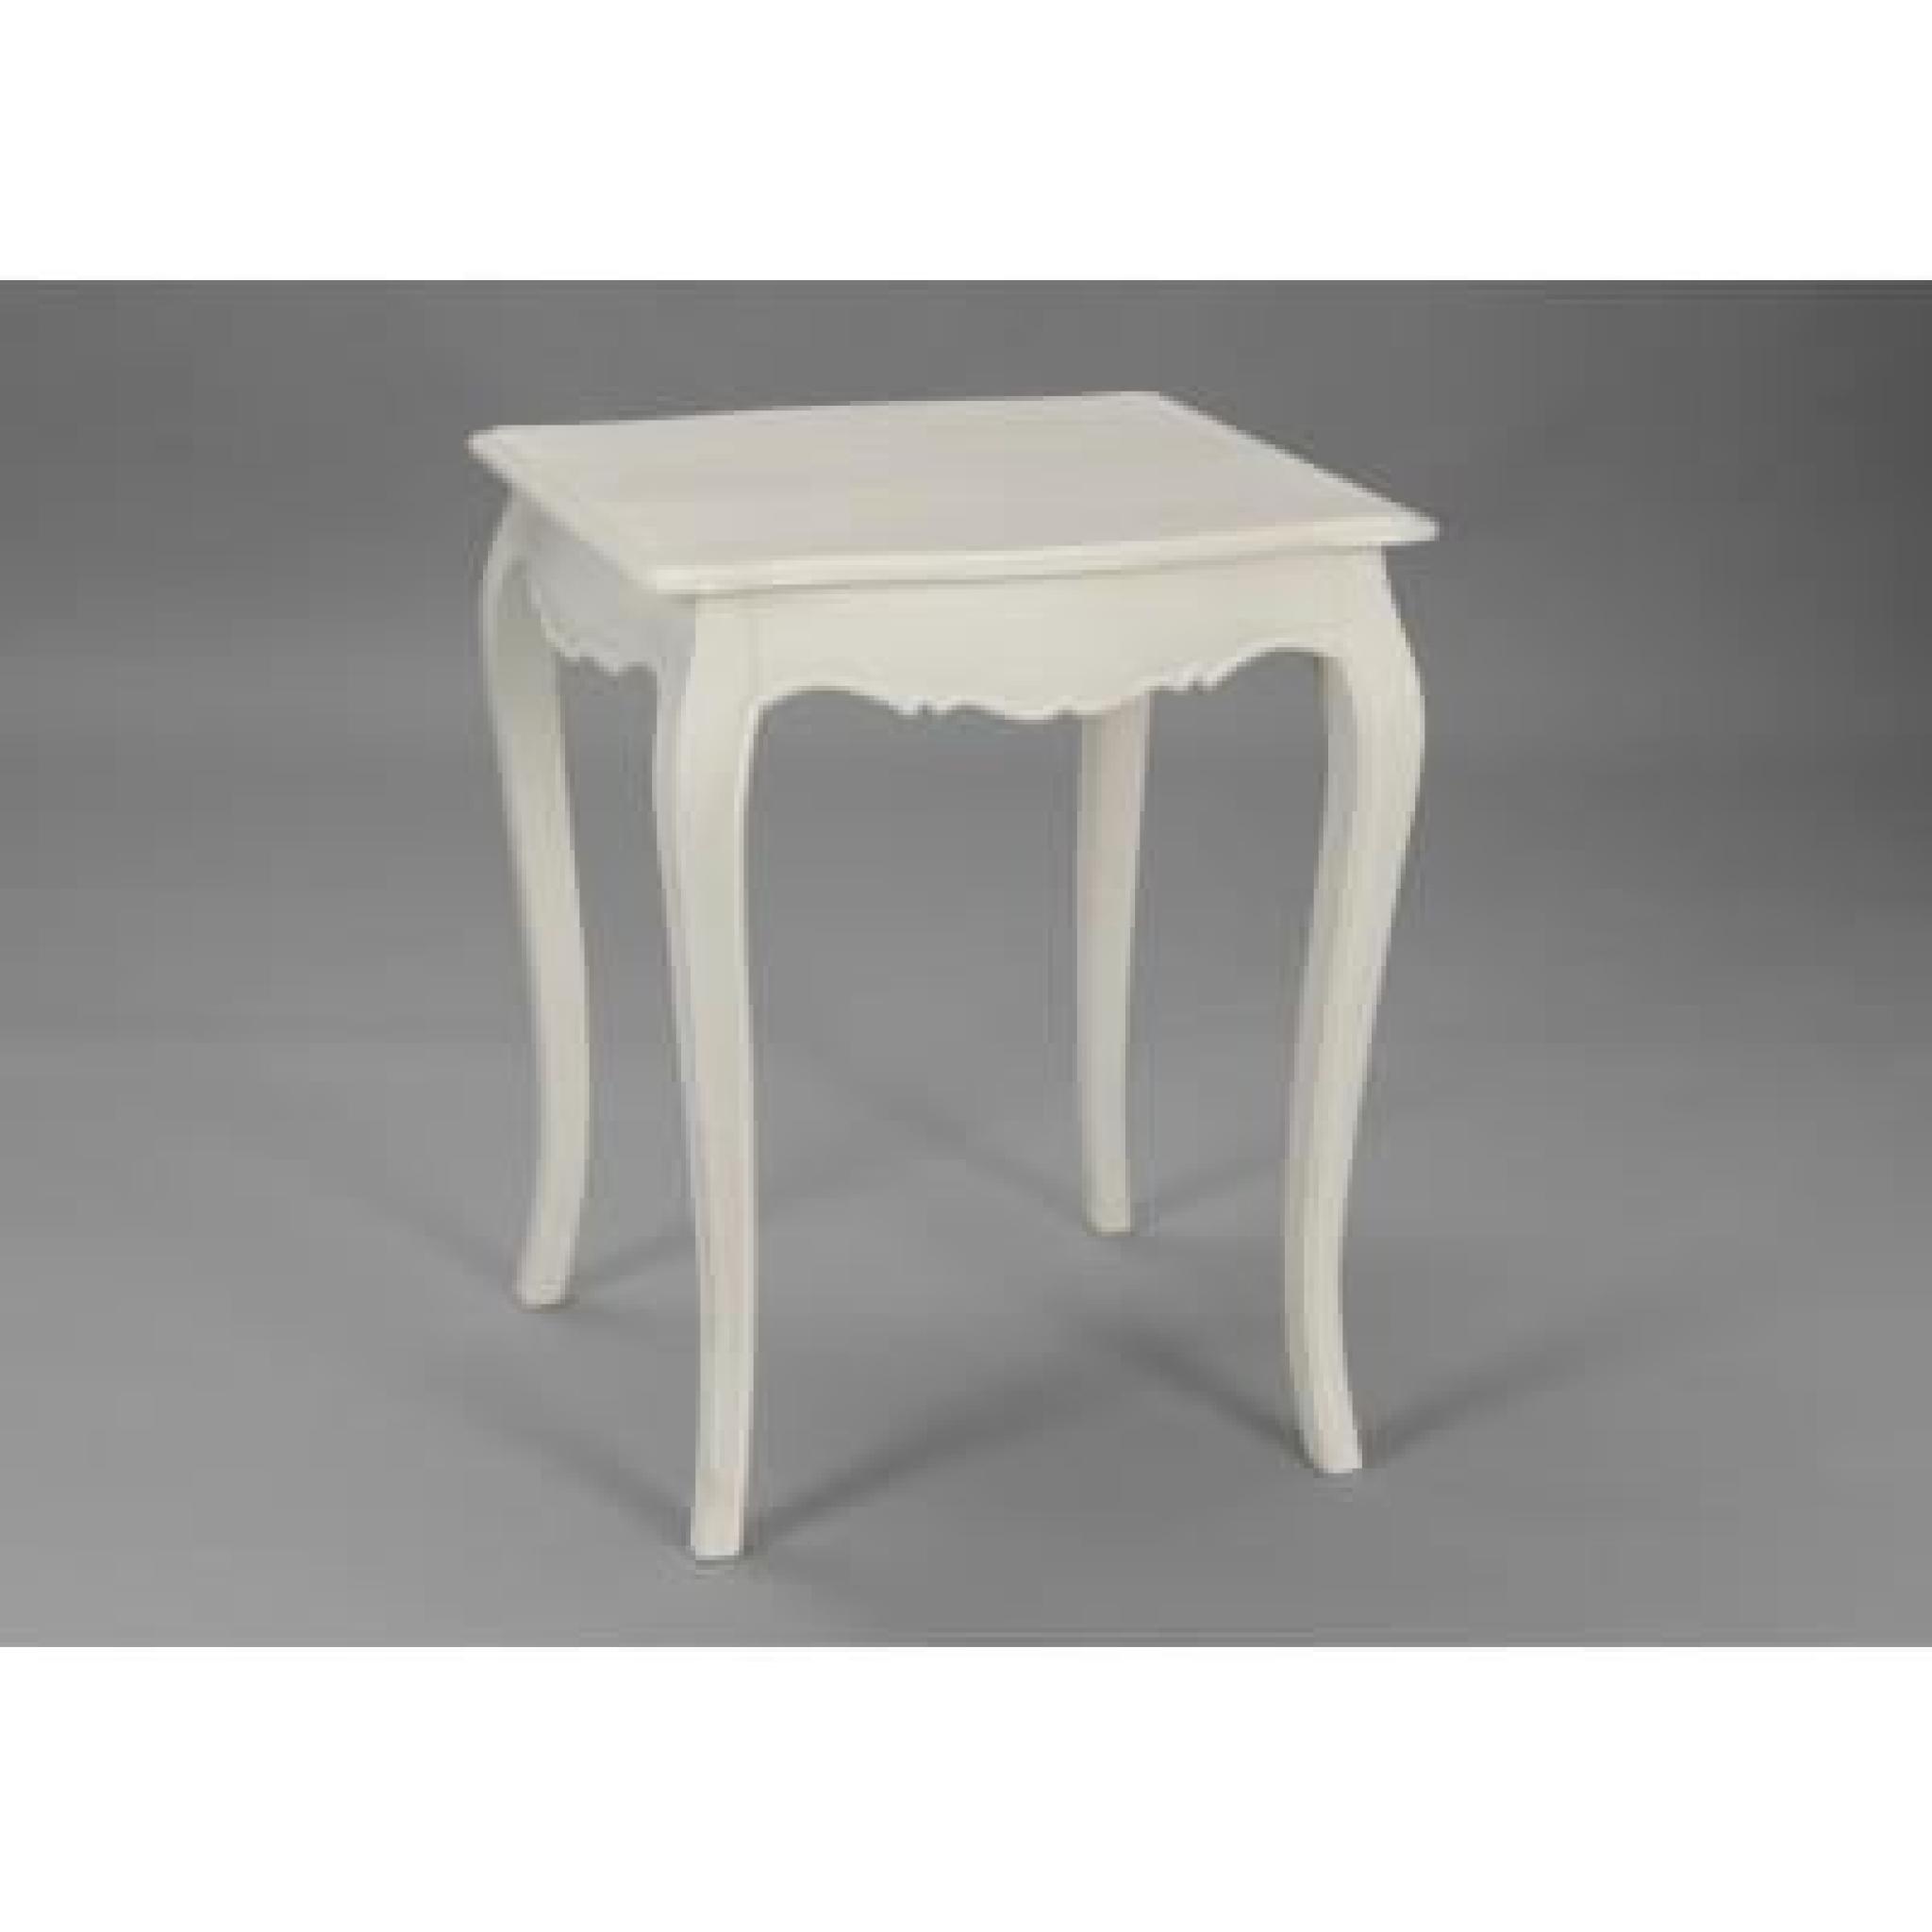 Petite table blanche Murano pas cher